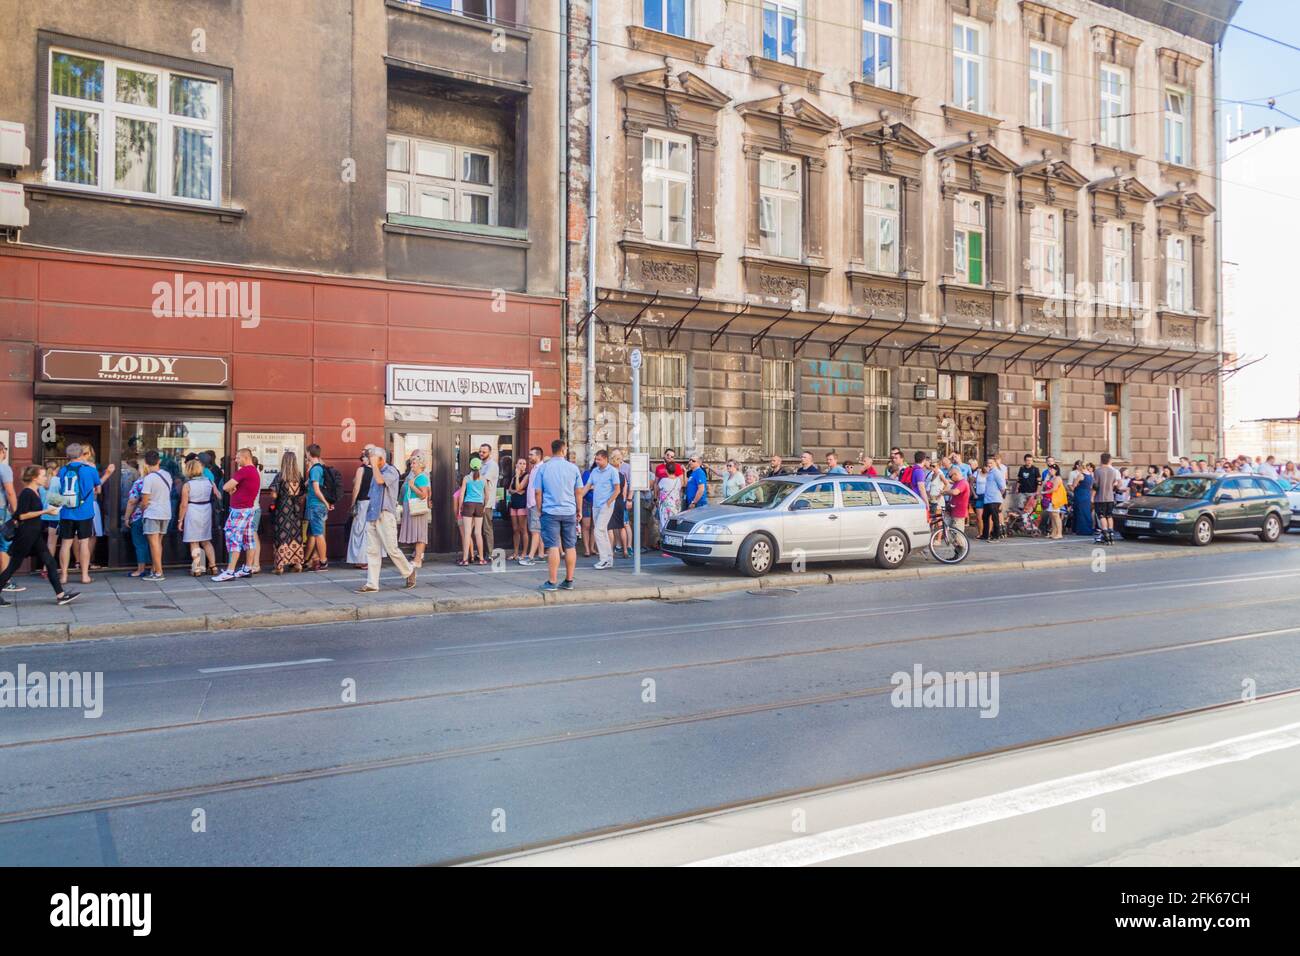 CRACOVIA, POLONIA - 4 SETTEMBRE 2016: La gente attende in coda per un gelato a Lody na Starowislnej, famosa gelateria di Cracovia, Polonia. Foto Stock